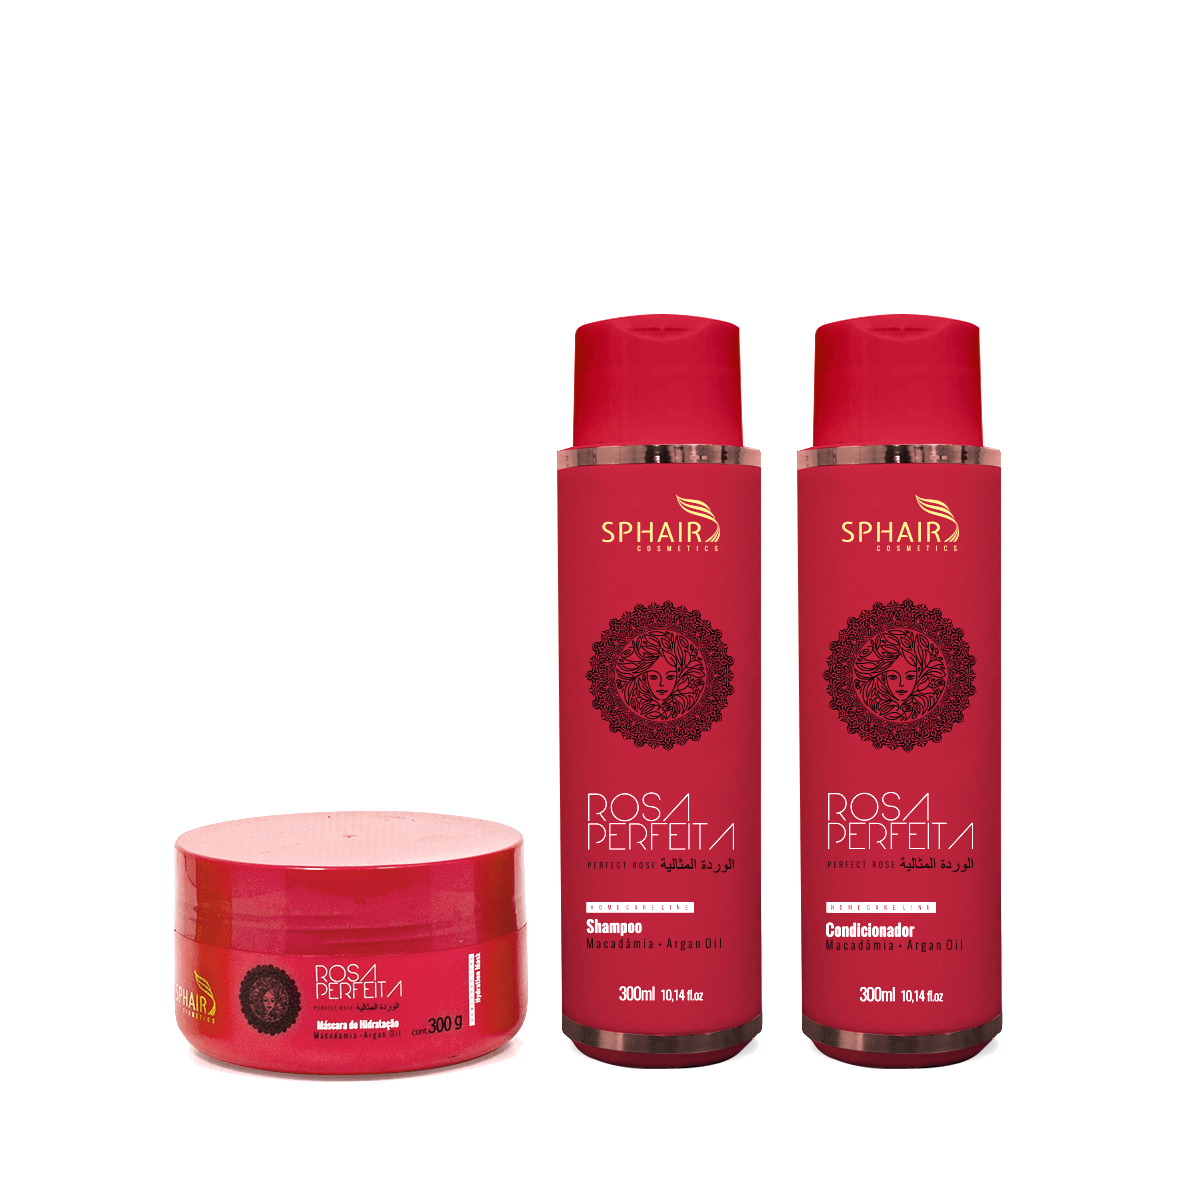 Kit de Hidratação Home Care Rosa Perfeita para todos os tipos de cabelo - Confere hidratação profunda, flexibilidade e maleabilidade dos fios